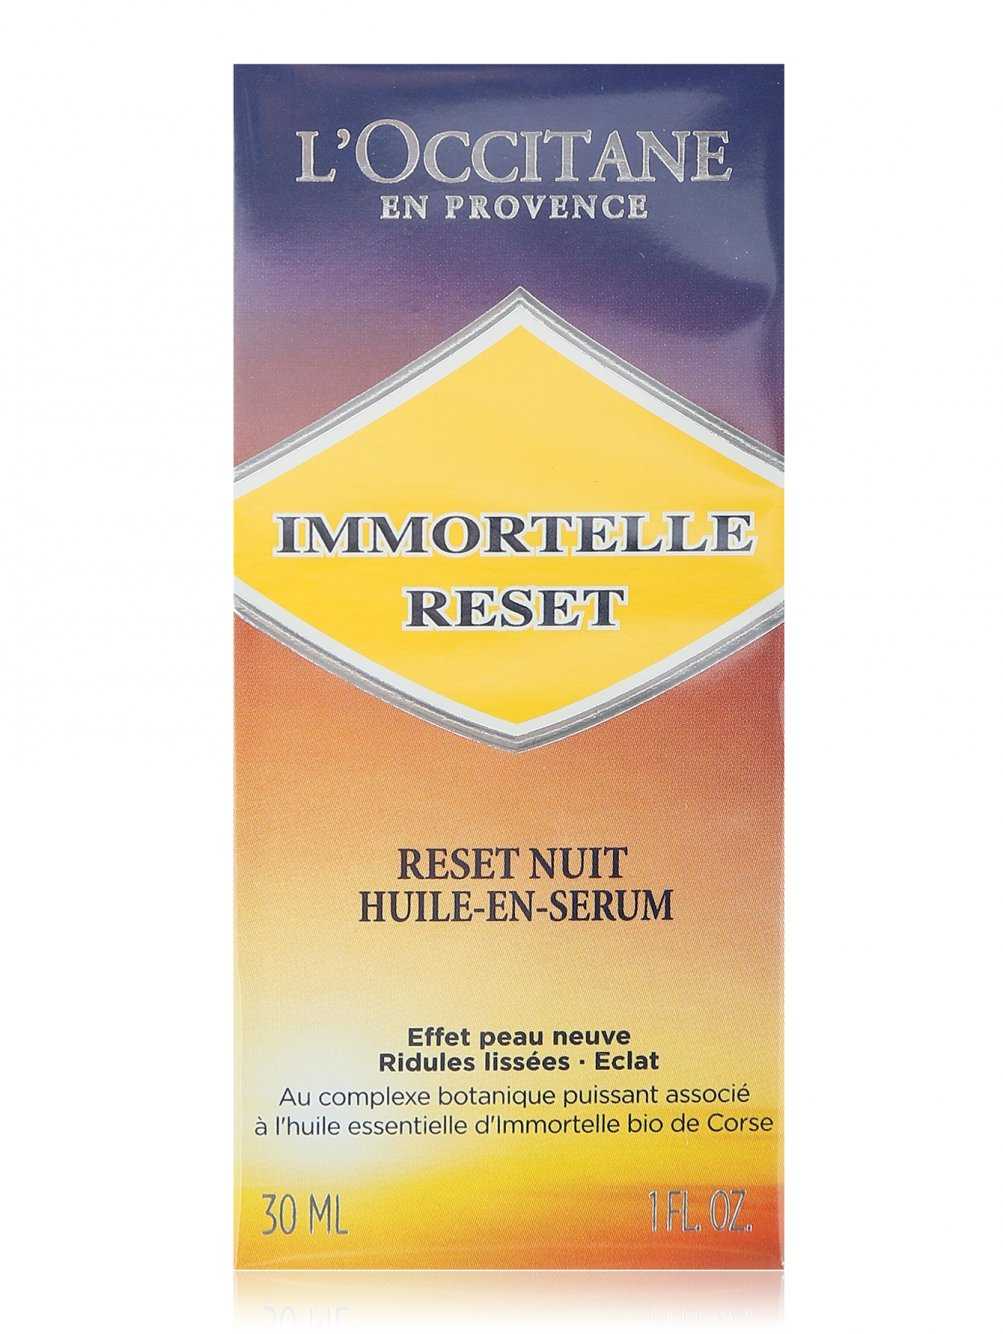 Французский бренд LOccitane представил новую ночную сыворотку Immortelle Reset, направленную на борьбу с признаками старения Как работает новинка, что входит в ее состав и какой эффект ждать читай не